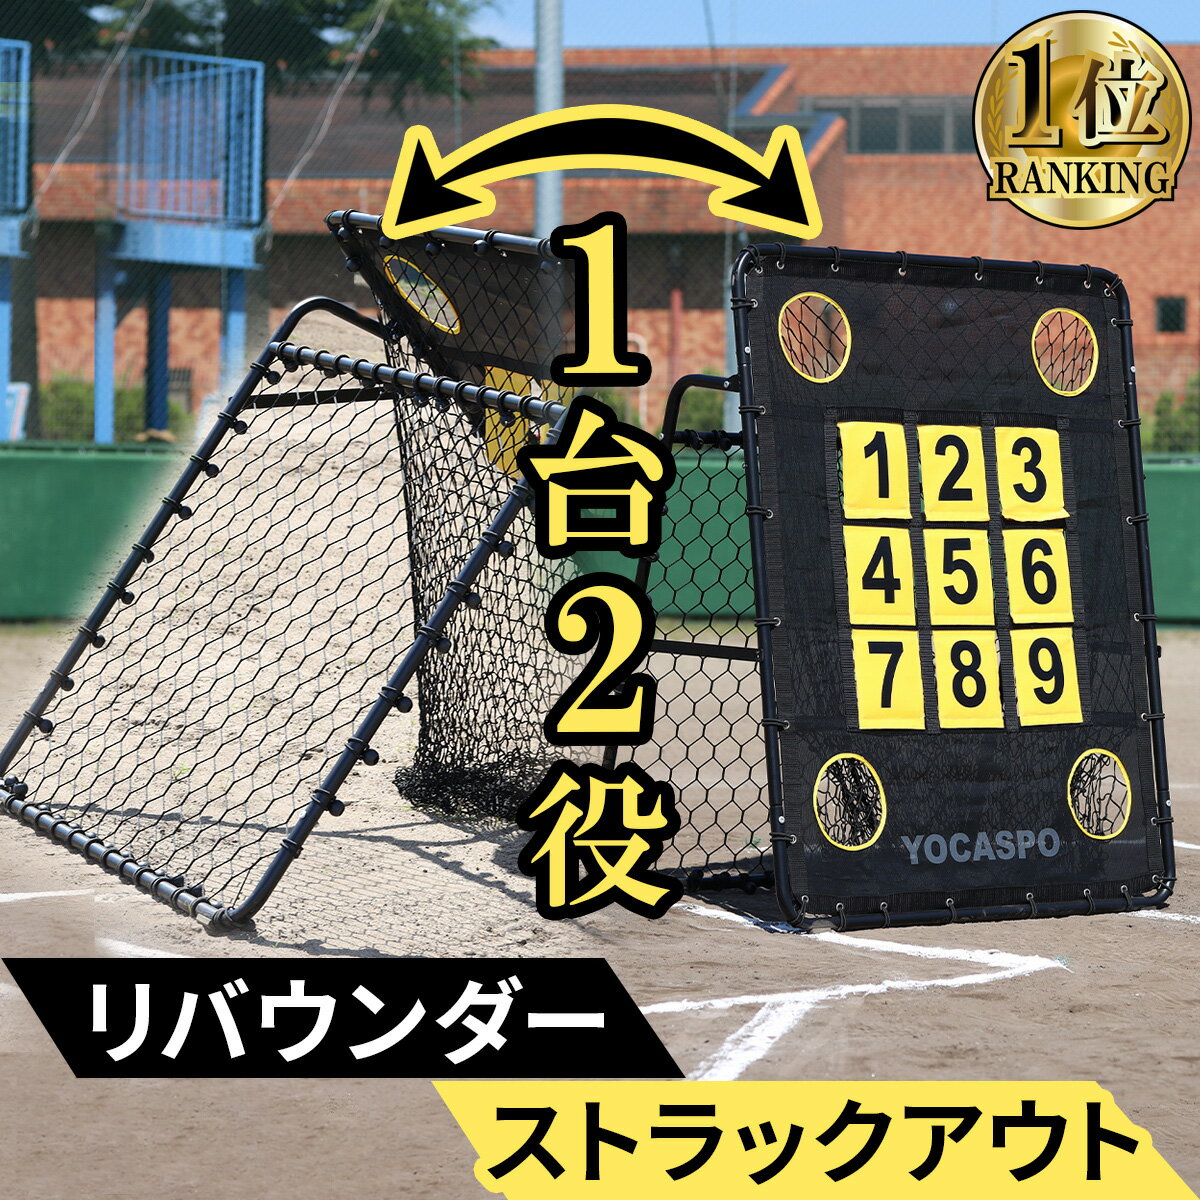 【楽天1位】 ヨカスポ YOCASPO ターゲットネット リバウンダー 野球 練習 捕球 投球 イレギュラー ピッチング ネット…